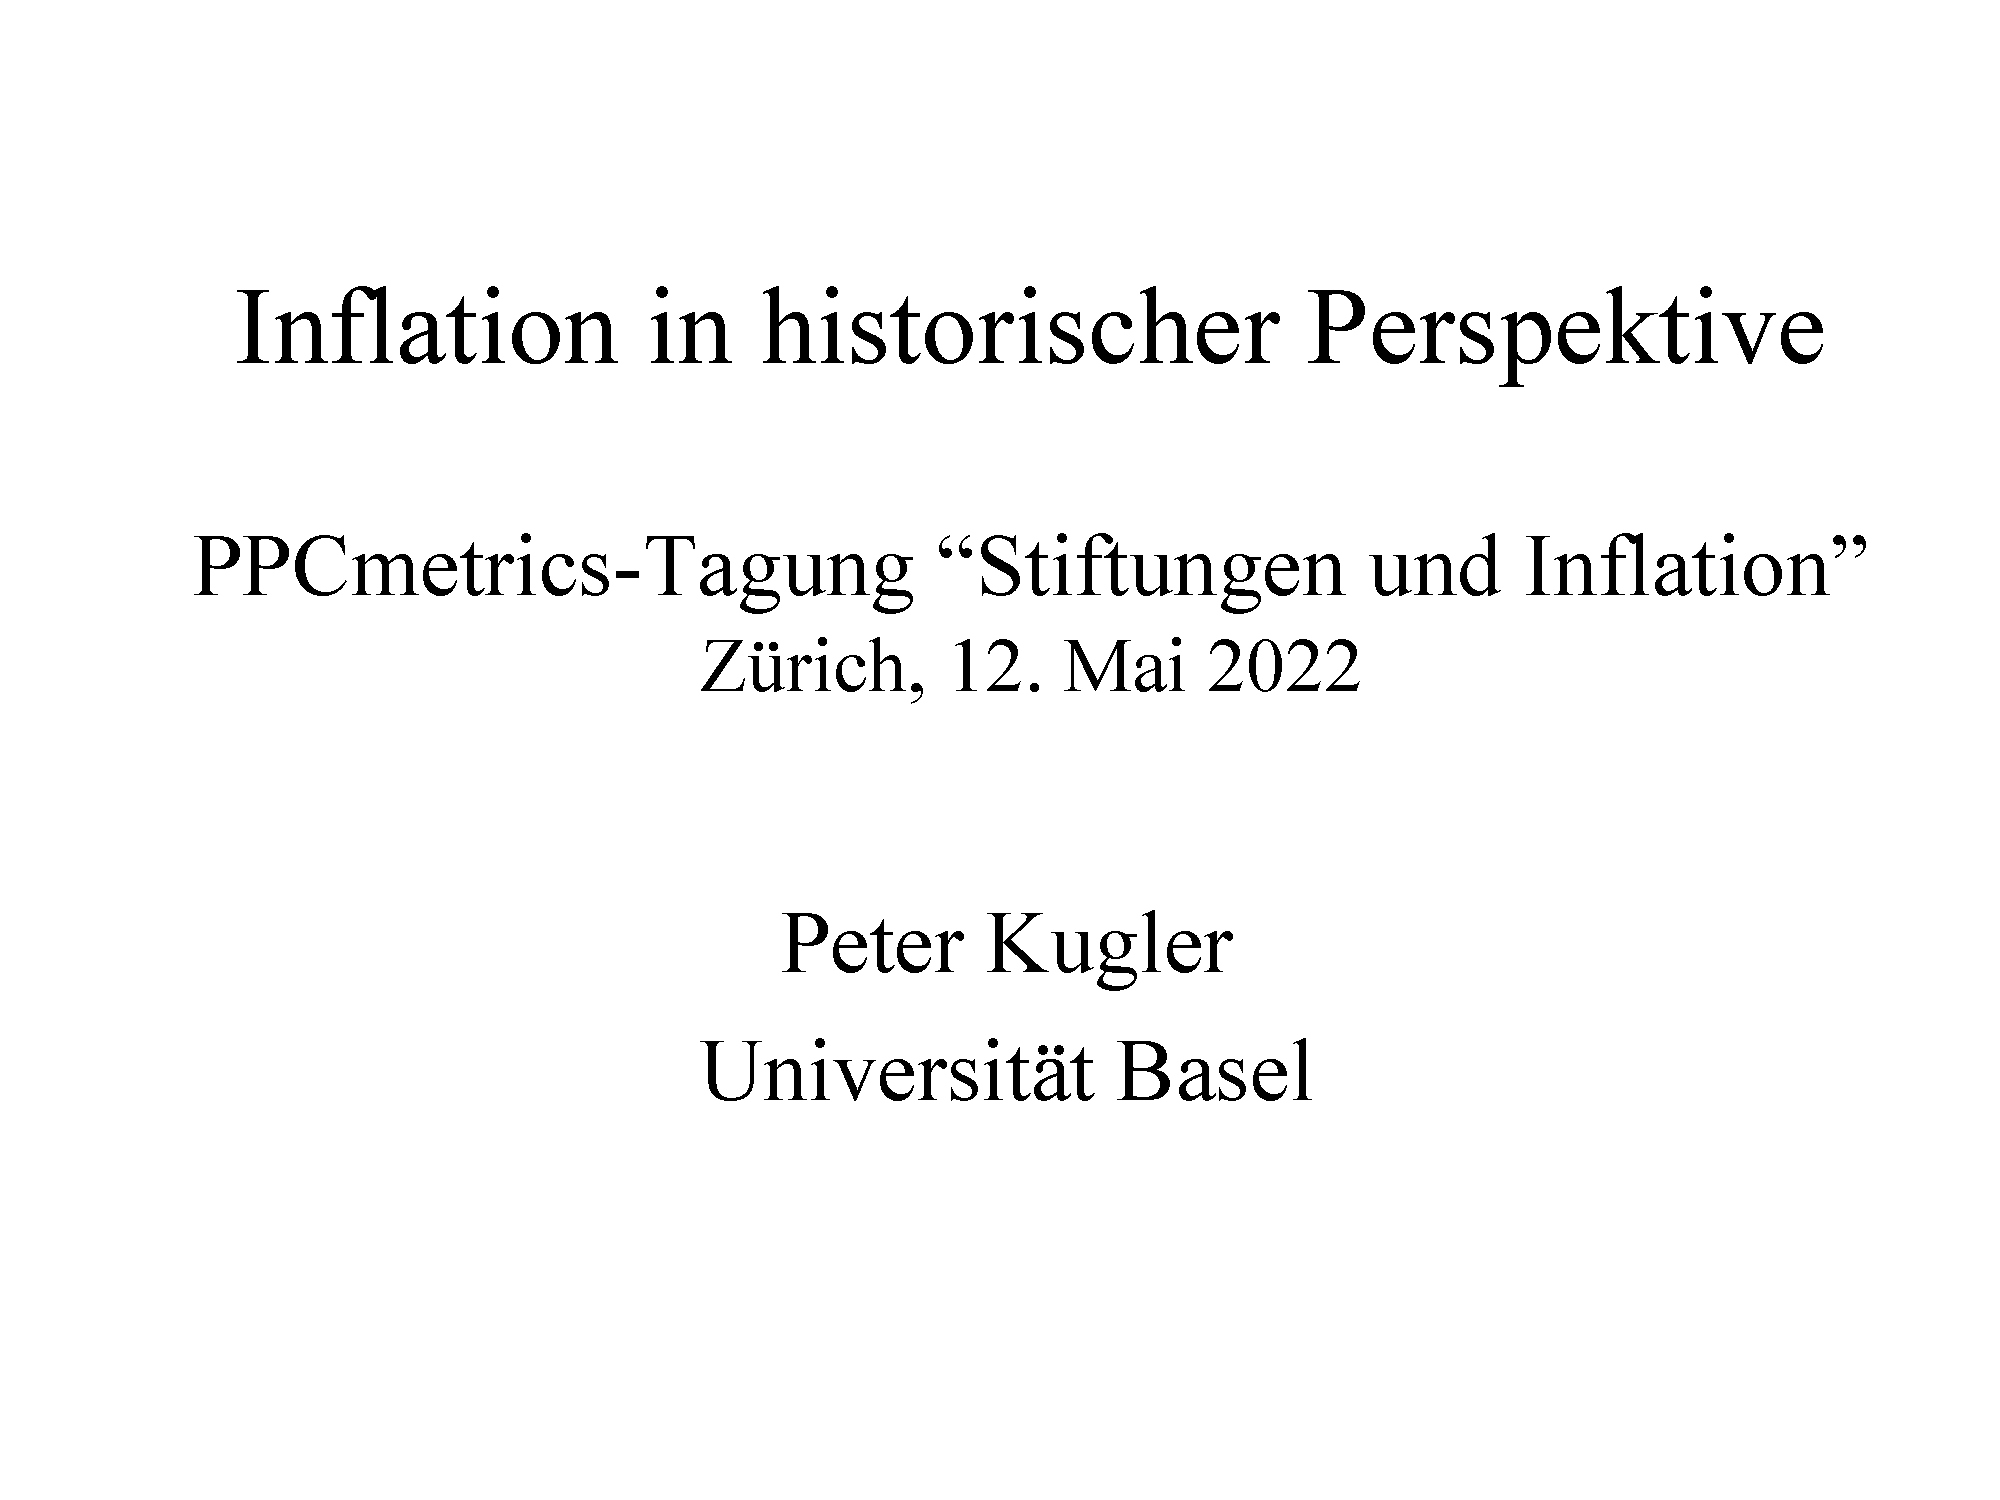 2022-05-12_Referat Kugler_Inflation in historischer Perspektive_Seite_02_Seite_01.png